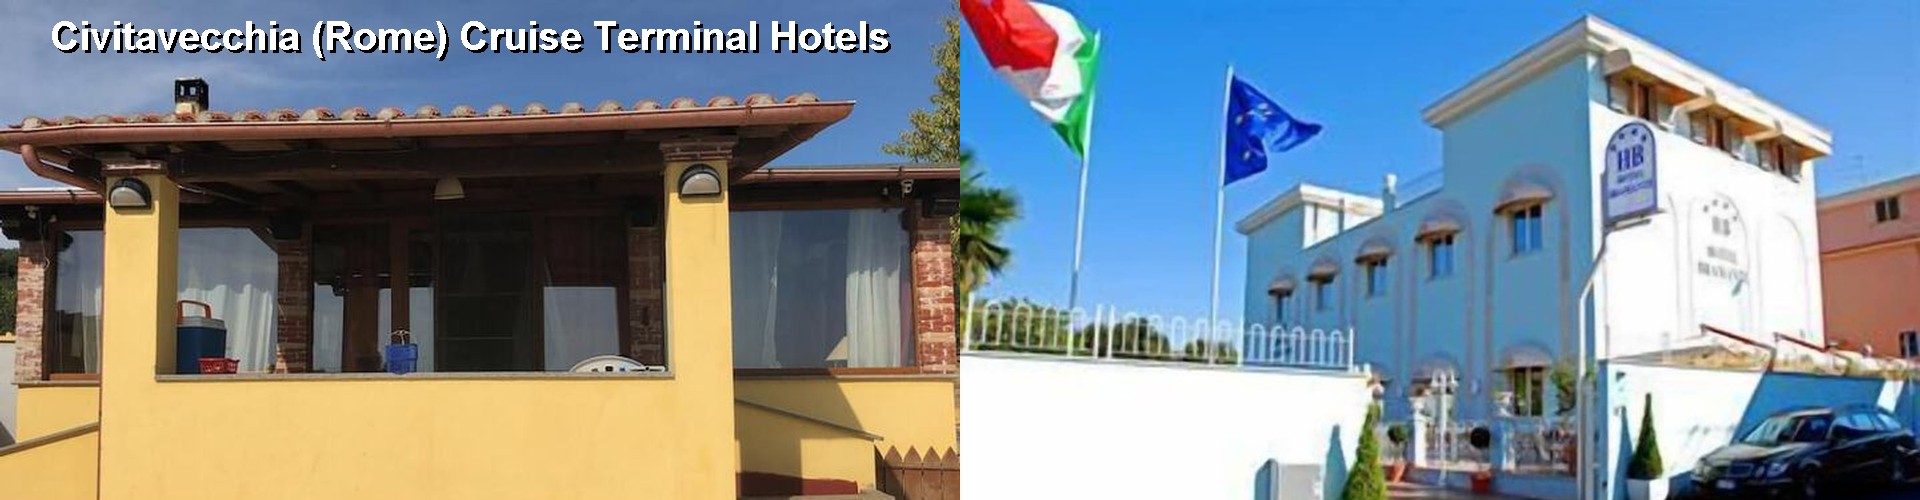 5 Best Hotels near Civitavecchia (Rome) Cruise Terminal